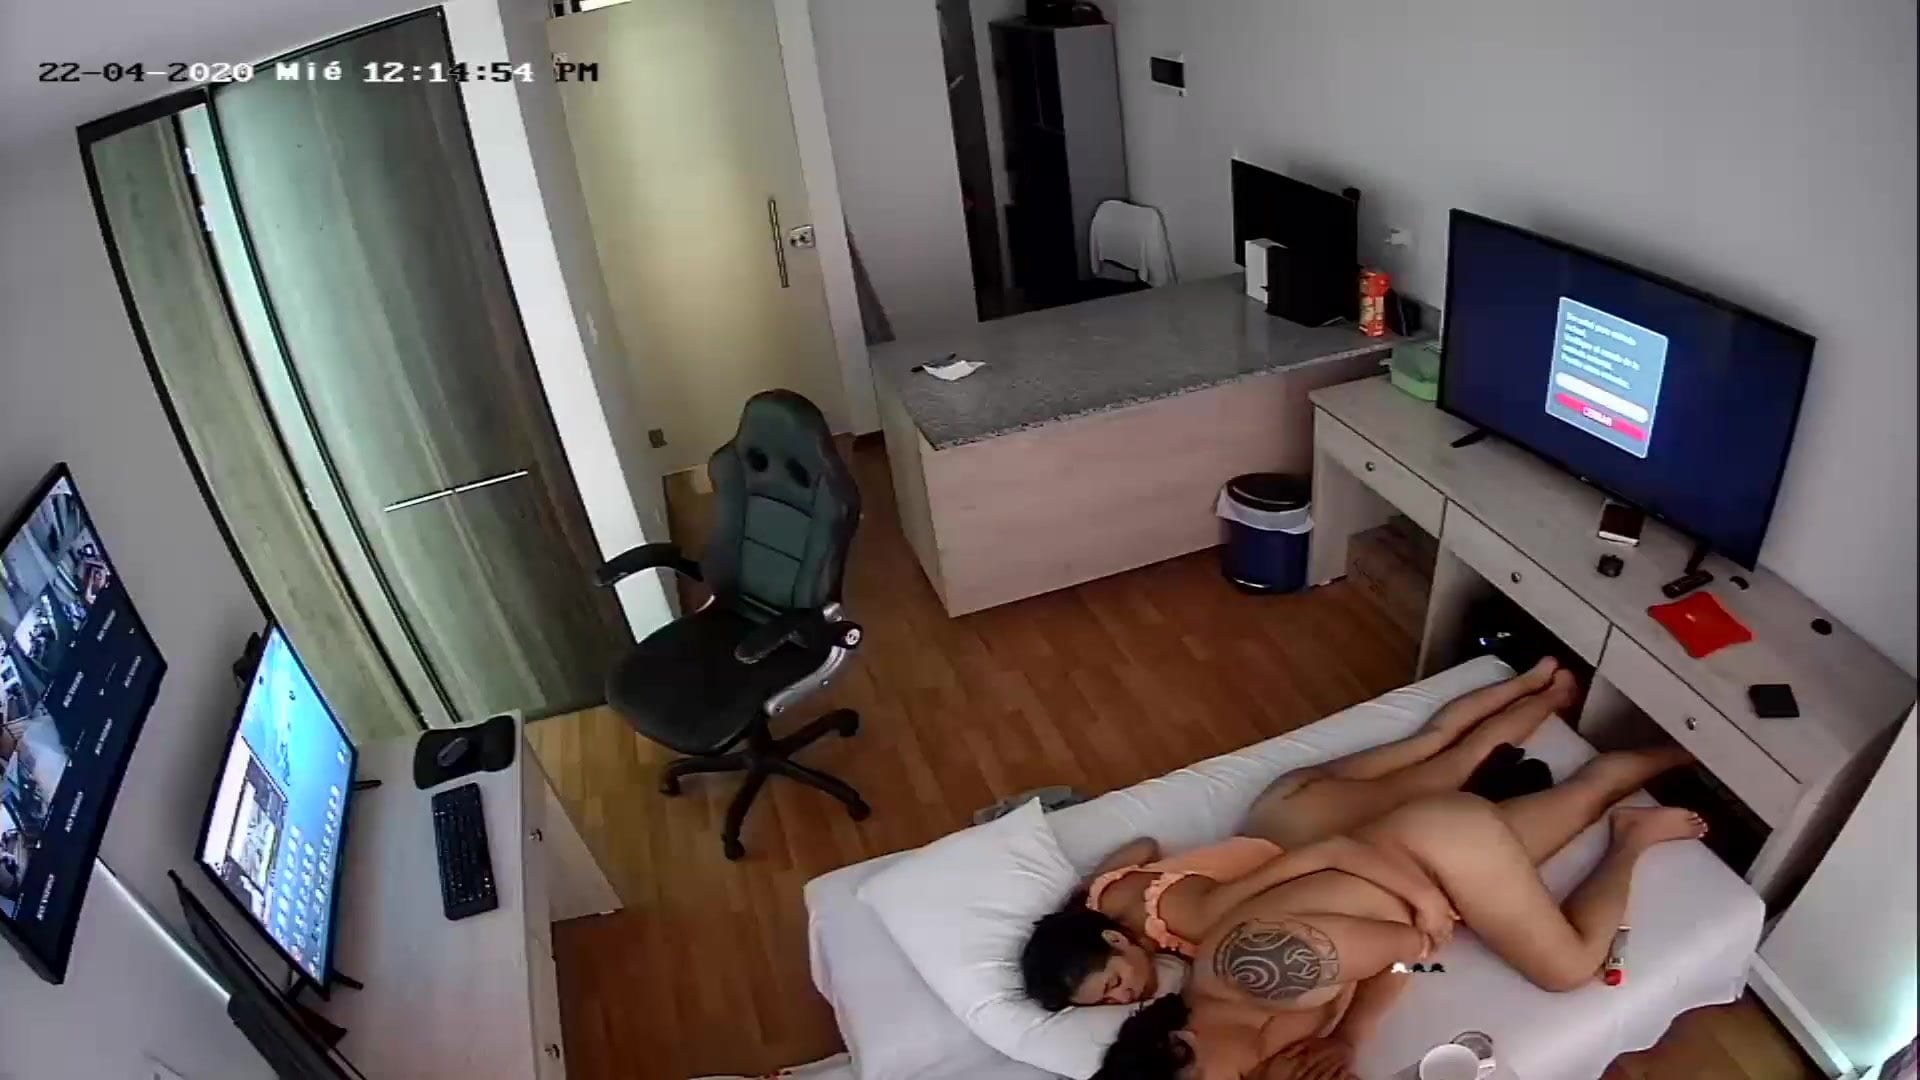 Porn hidden cam office